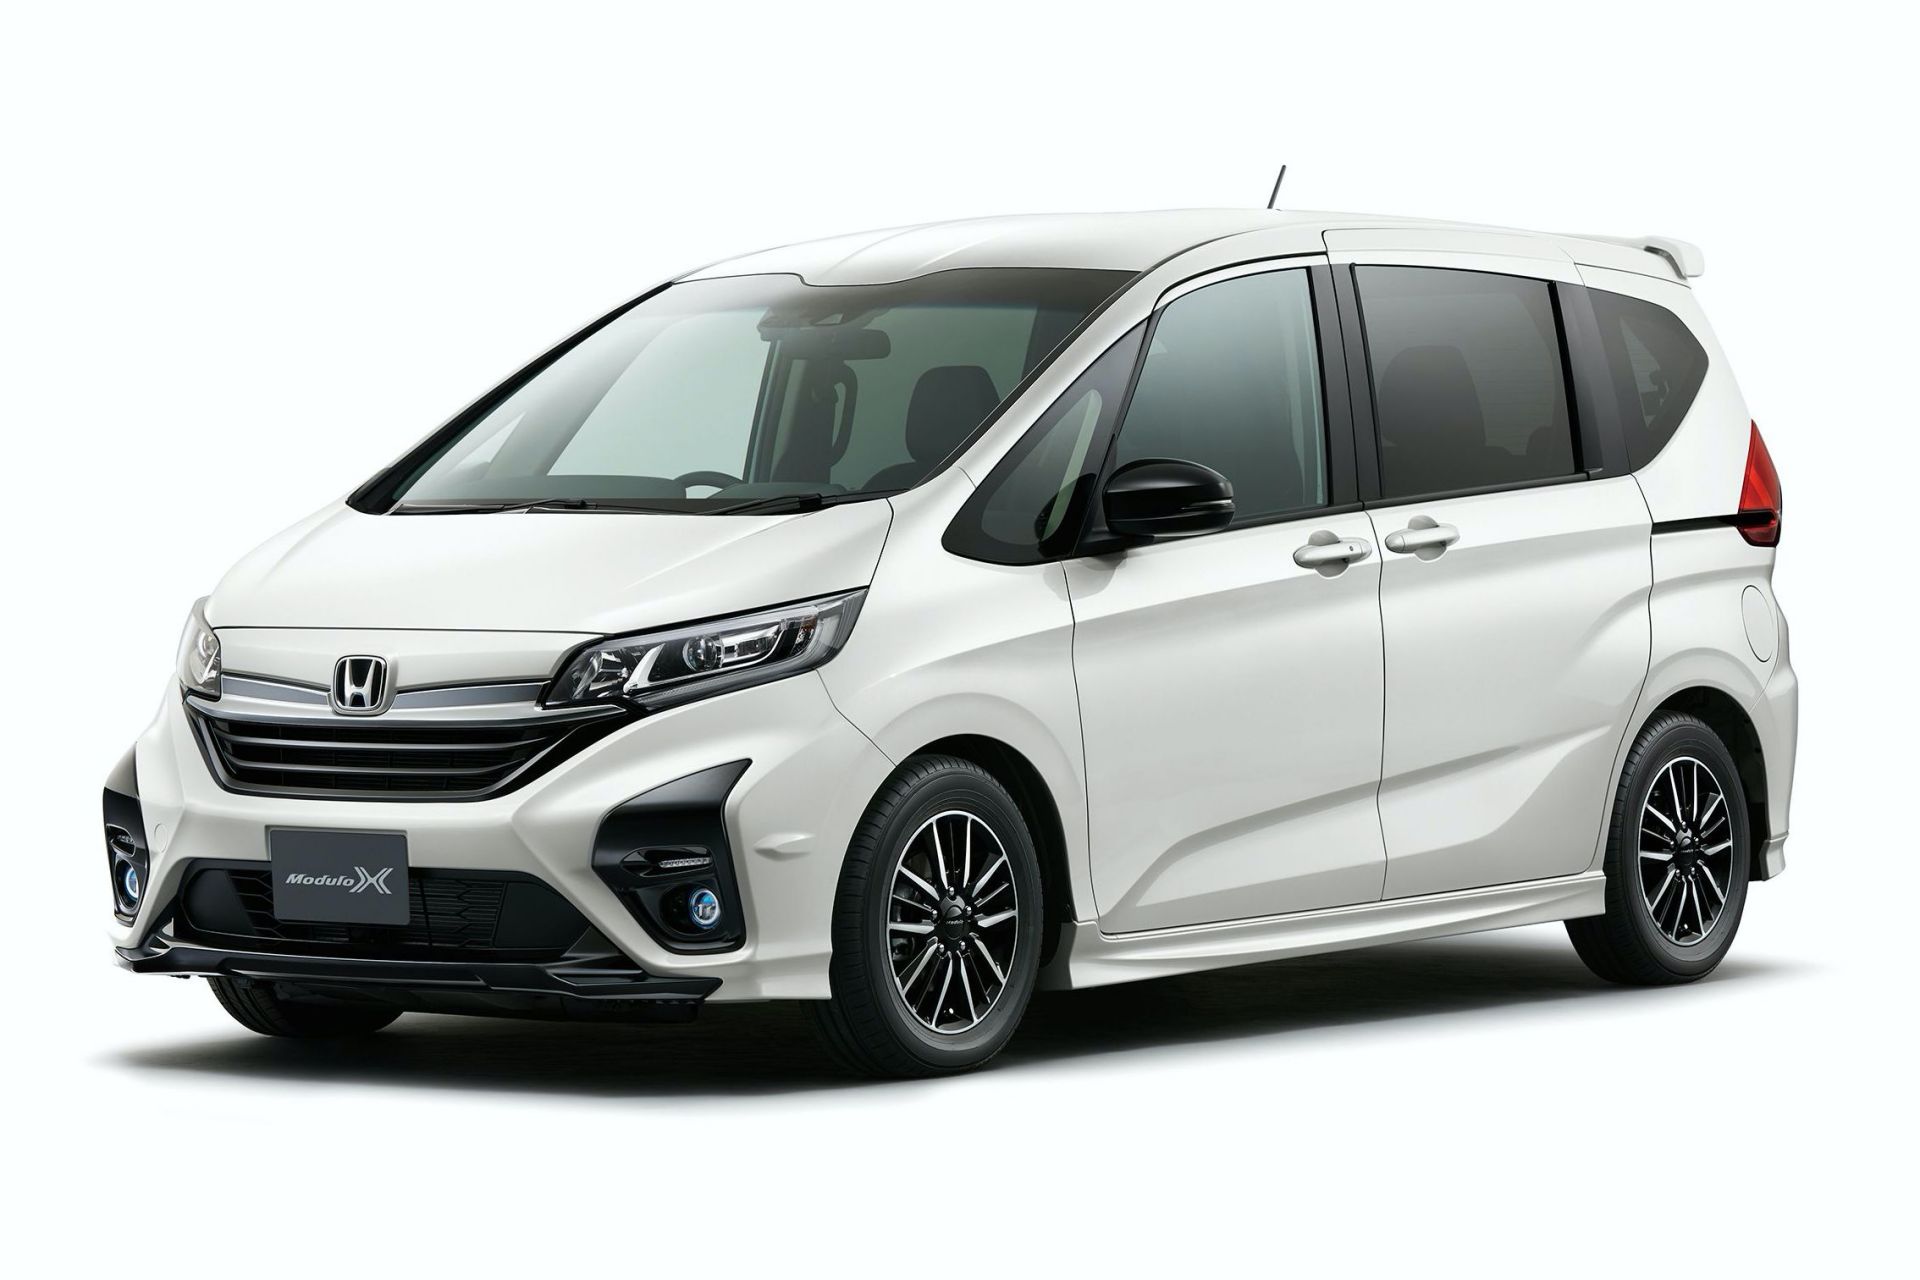 Honda trở thành nhà sản xuất đầu tiên bán ô tô nội địa trực tuyến tại Nhật Bản